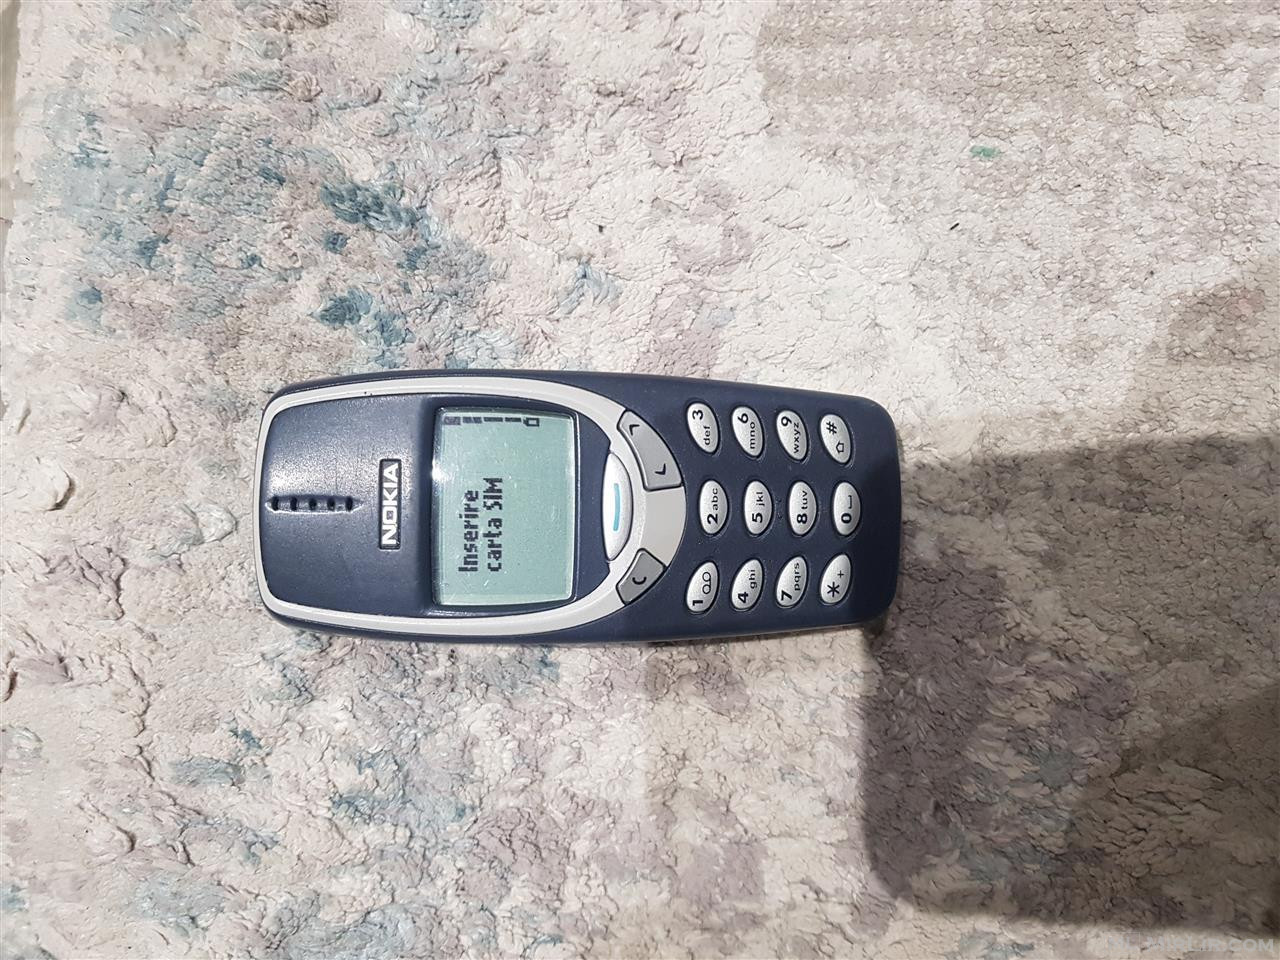 Nokia 3310 vitit 2002